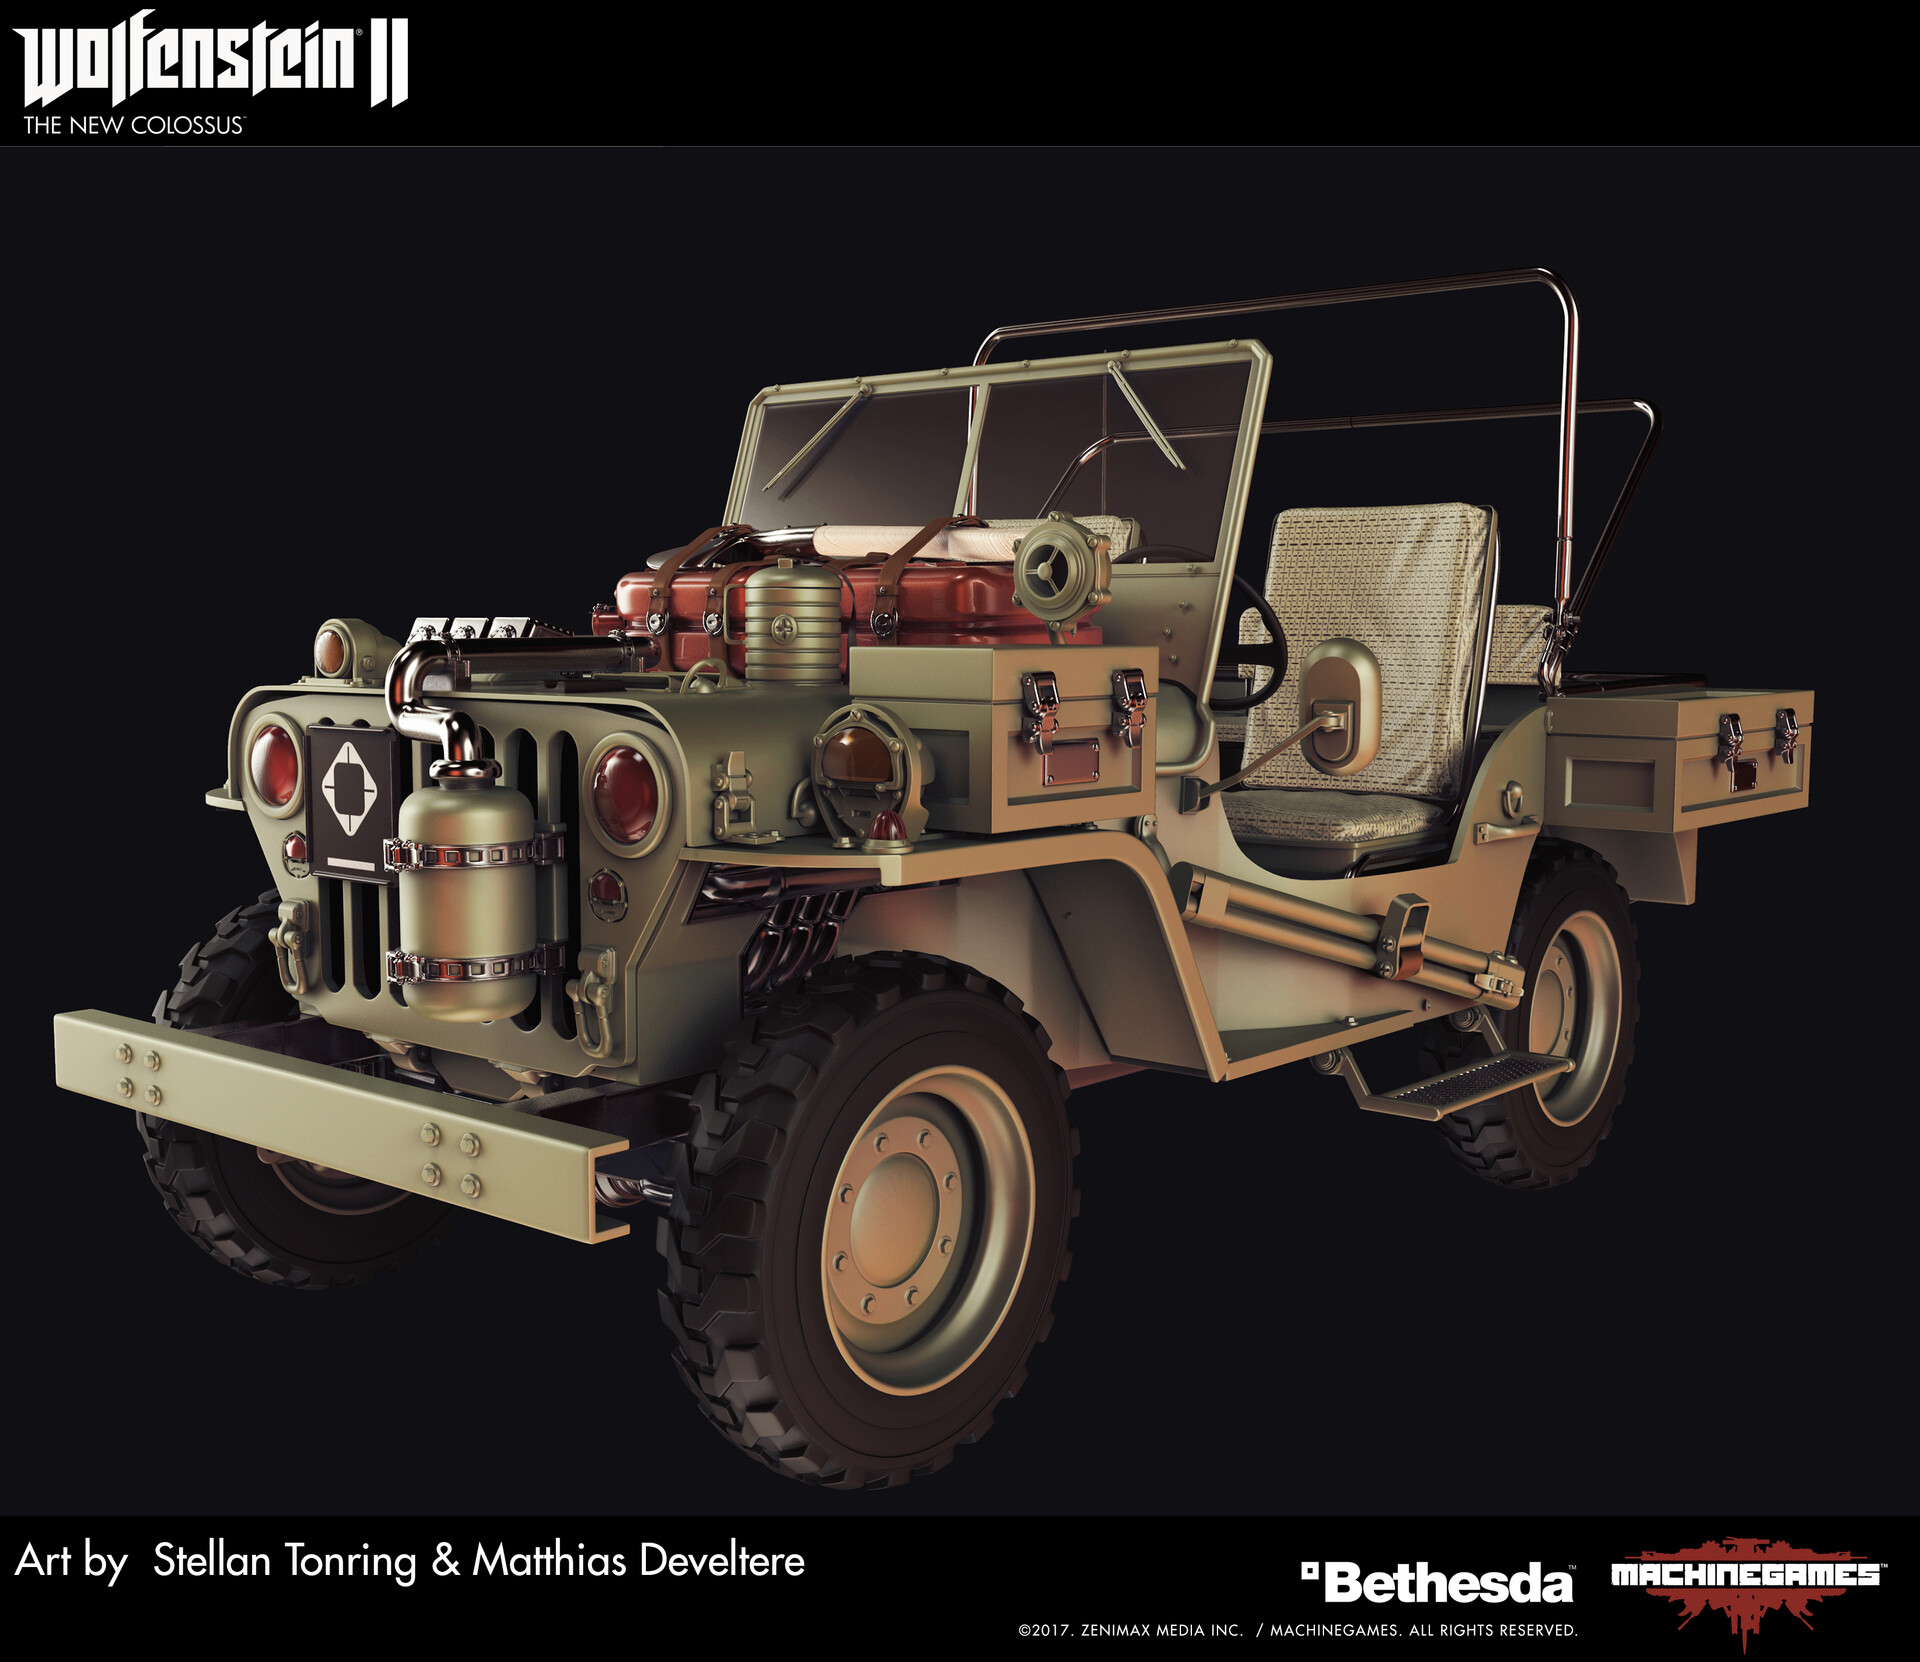 Wolfenstein 2: Allied Vehicles.